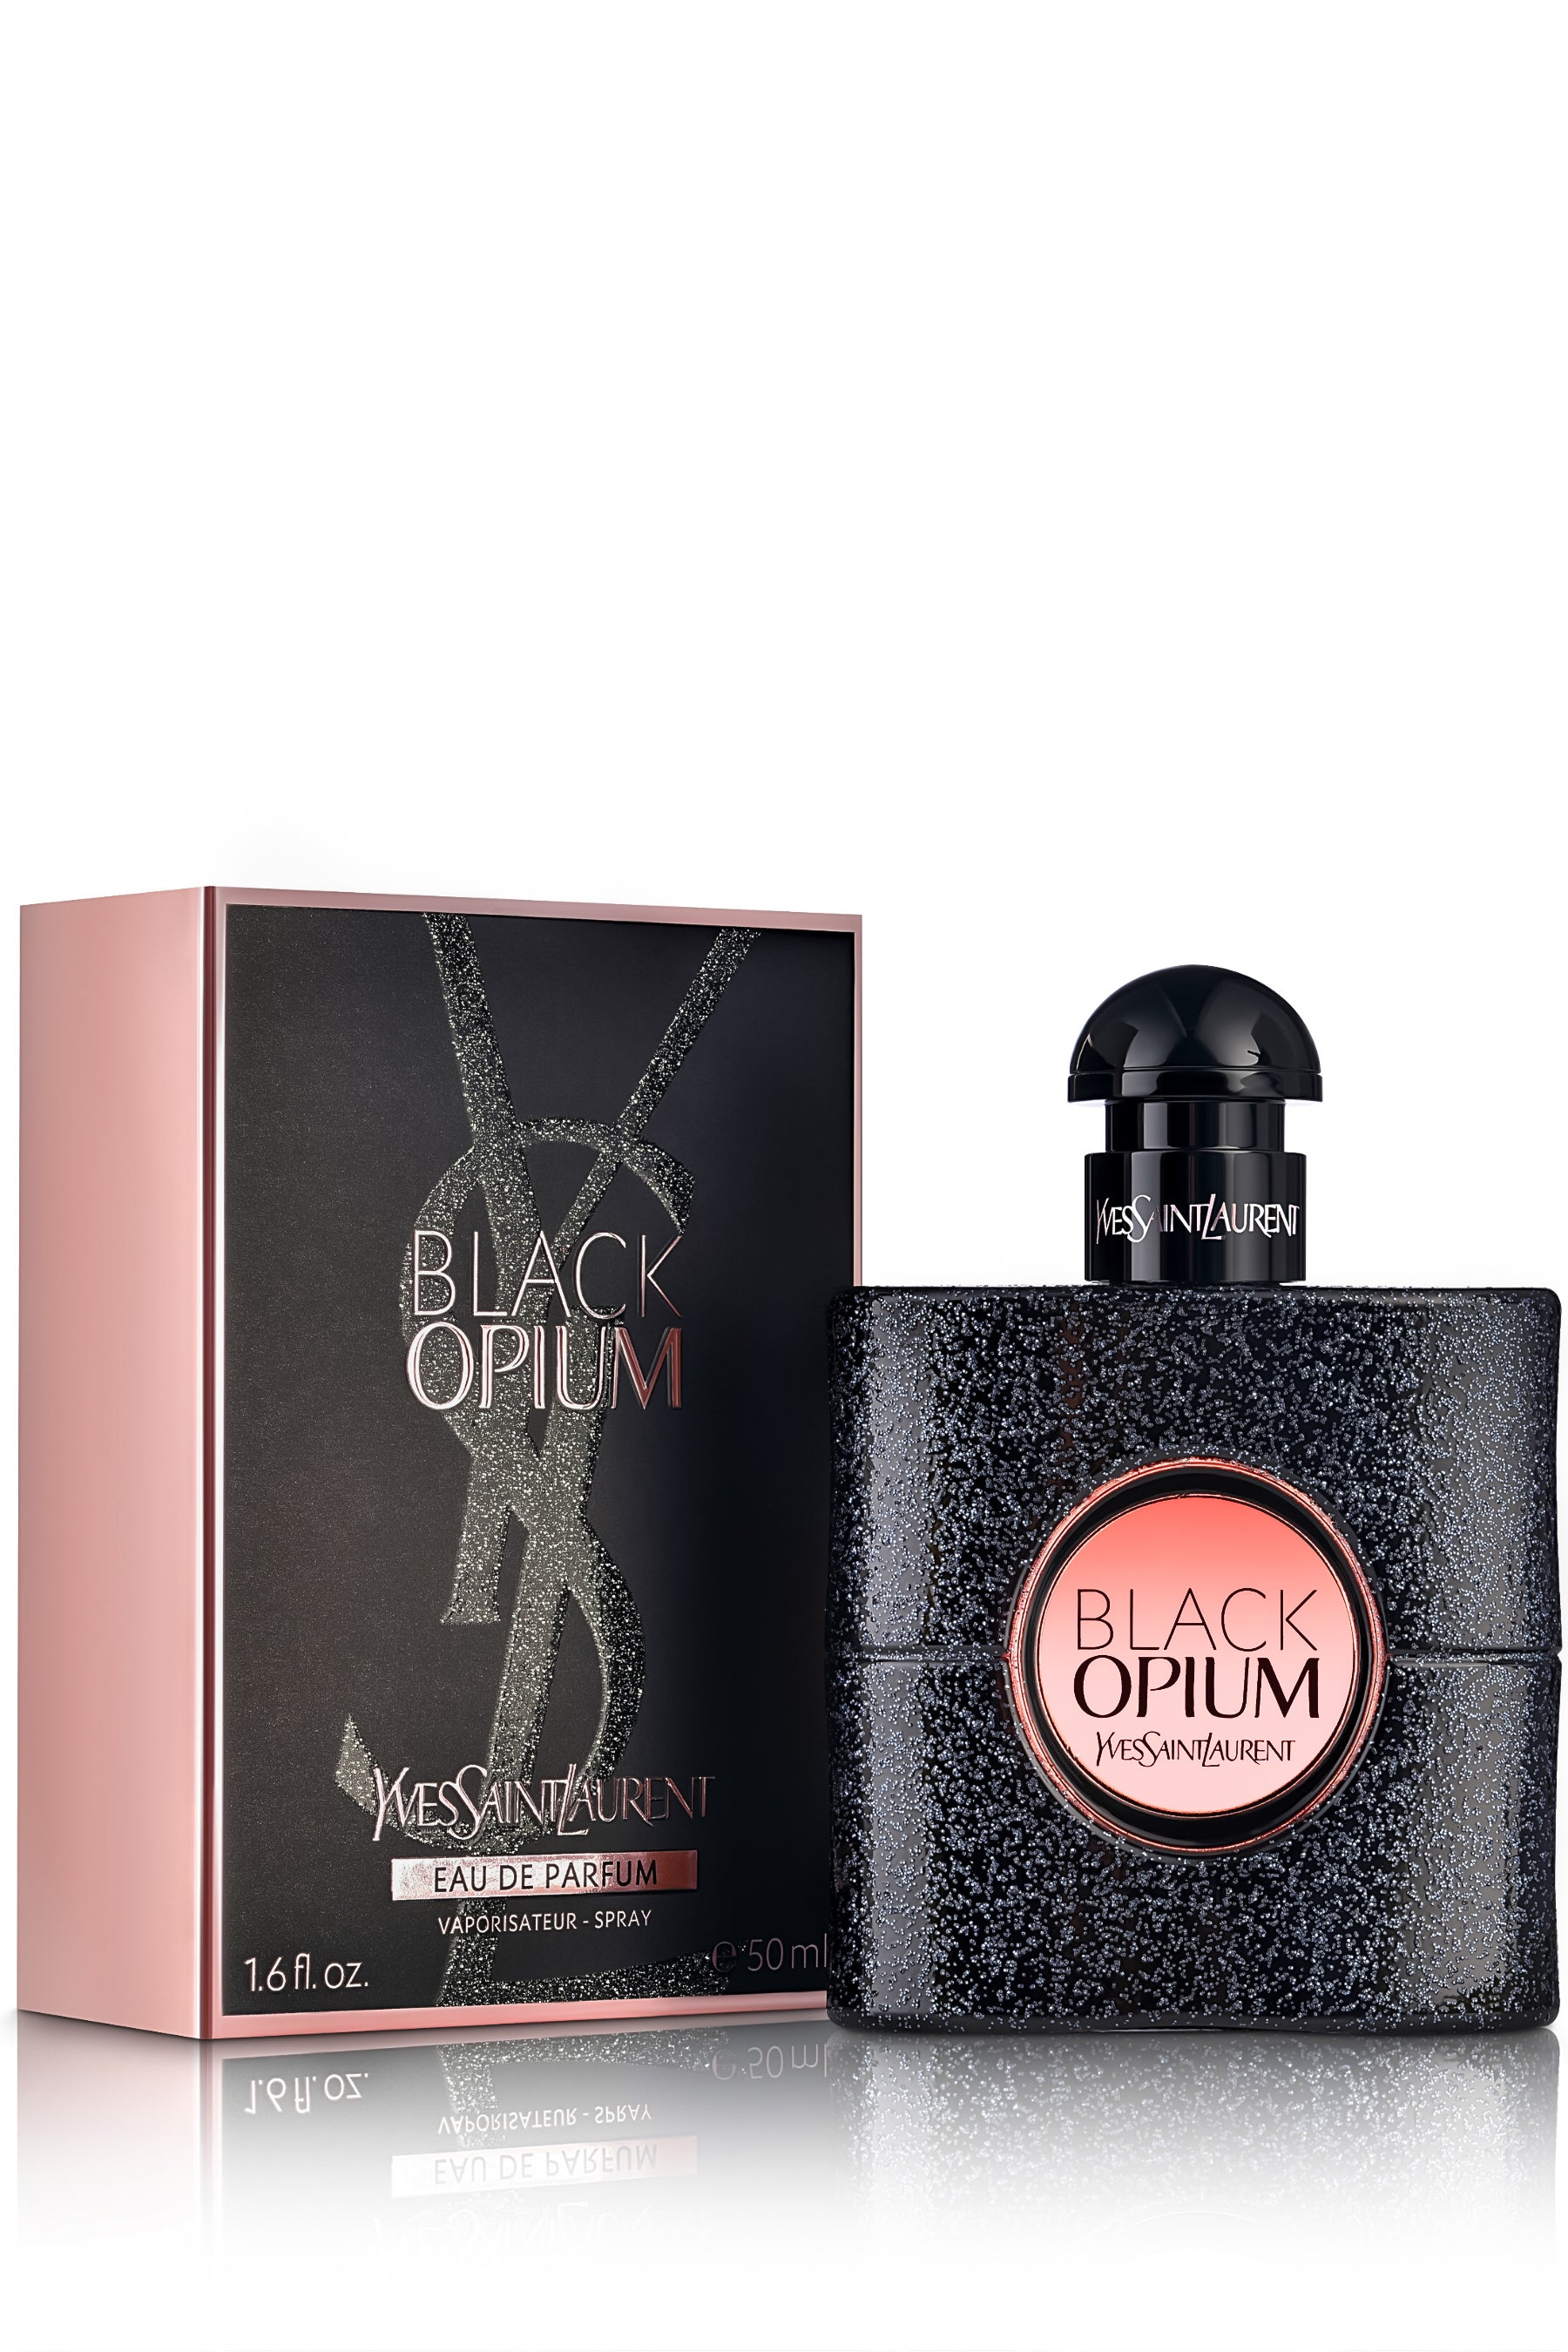 Yves Saint Laurent Black Opium Eau de Parfum Extreme Travel Spray